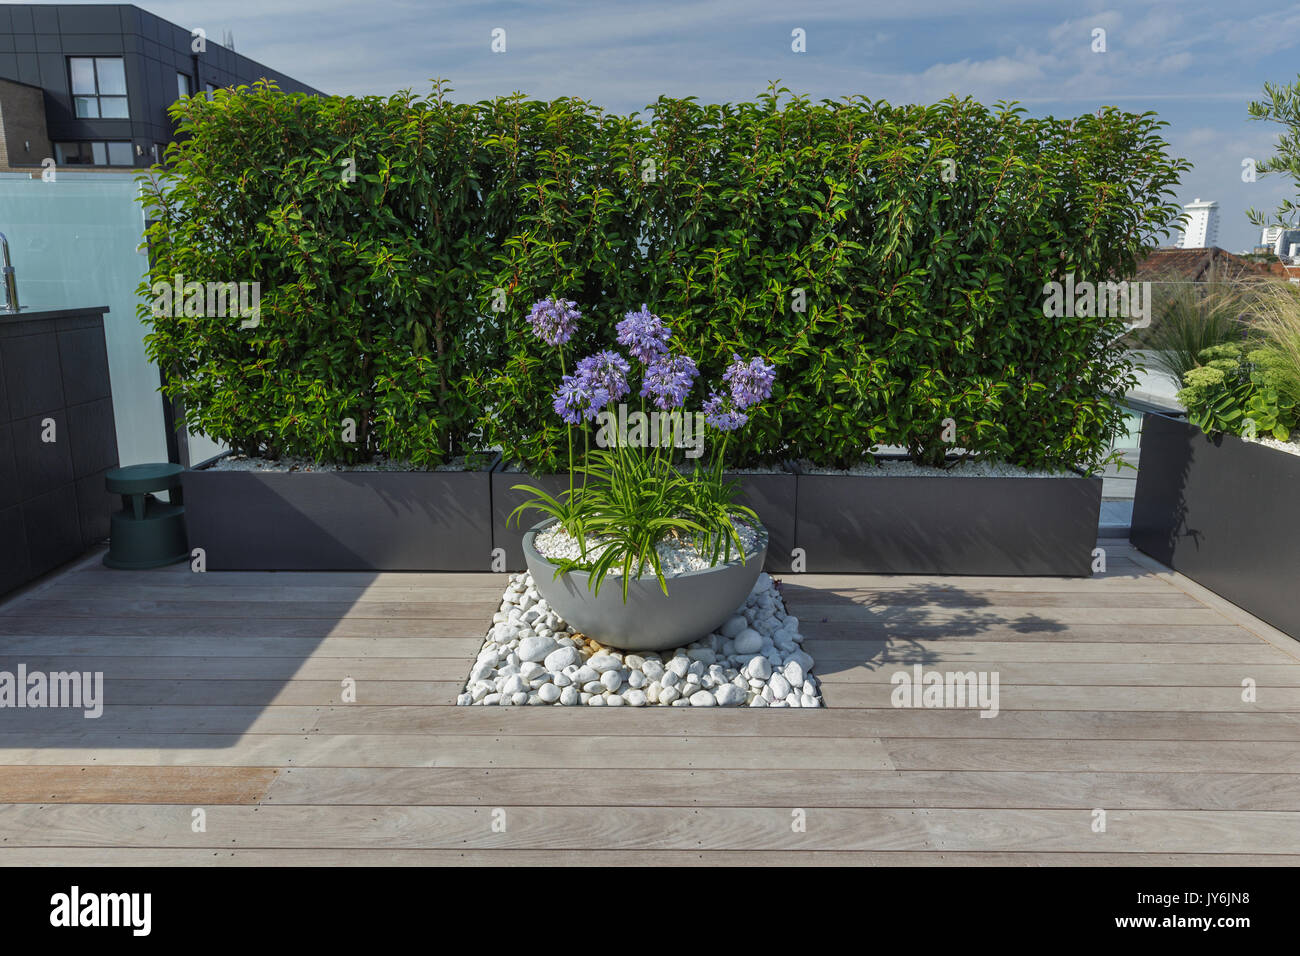 Toit-terrasse de luxe à Londres avec des scieries de bois, contemporaine à la plantation luxuriante et mobilier moderne Banque D'Images